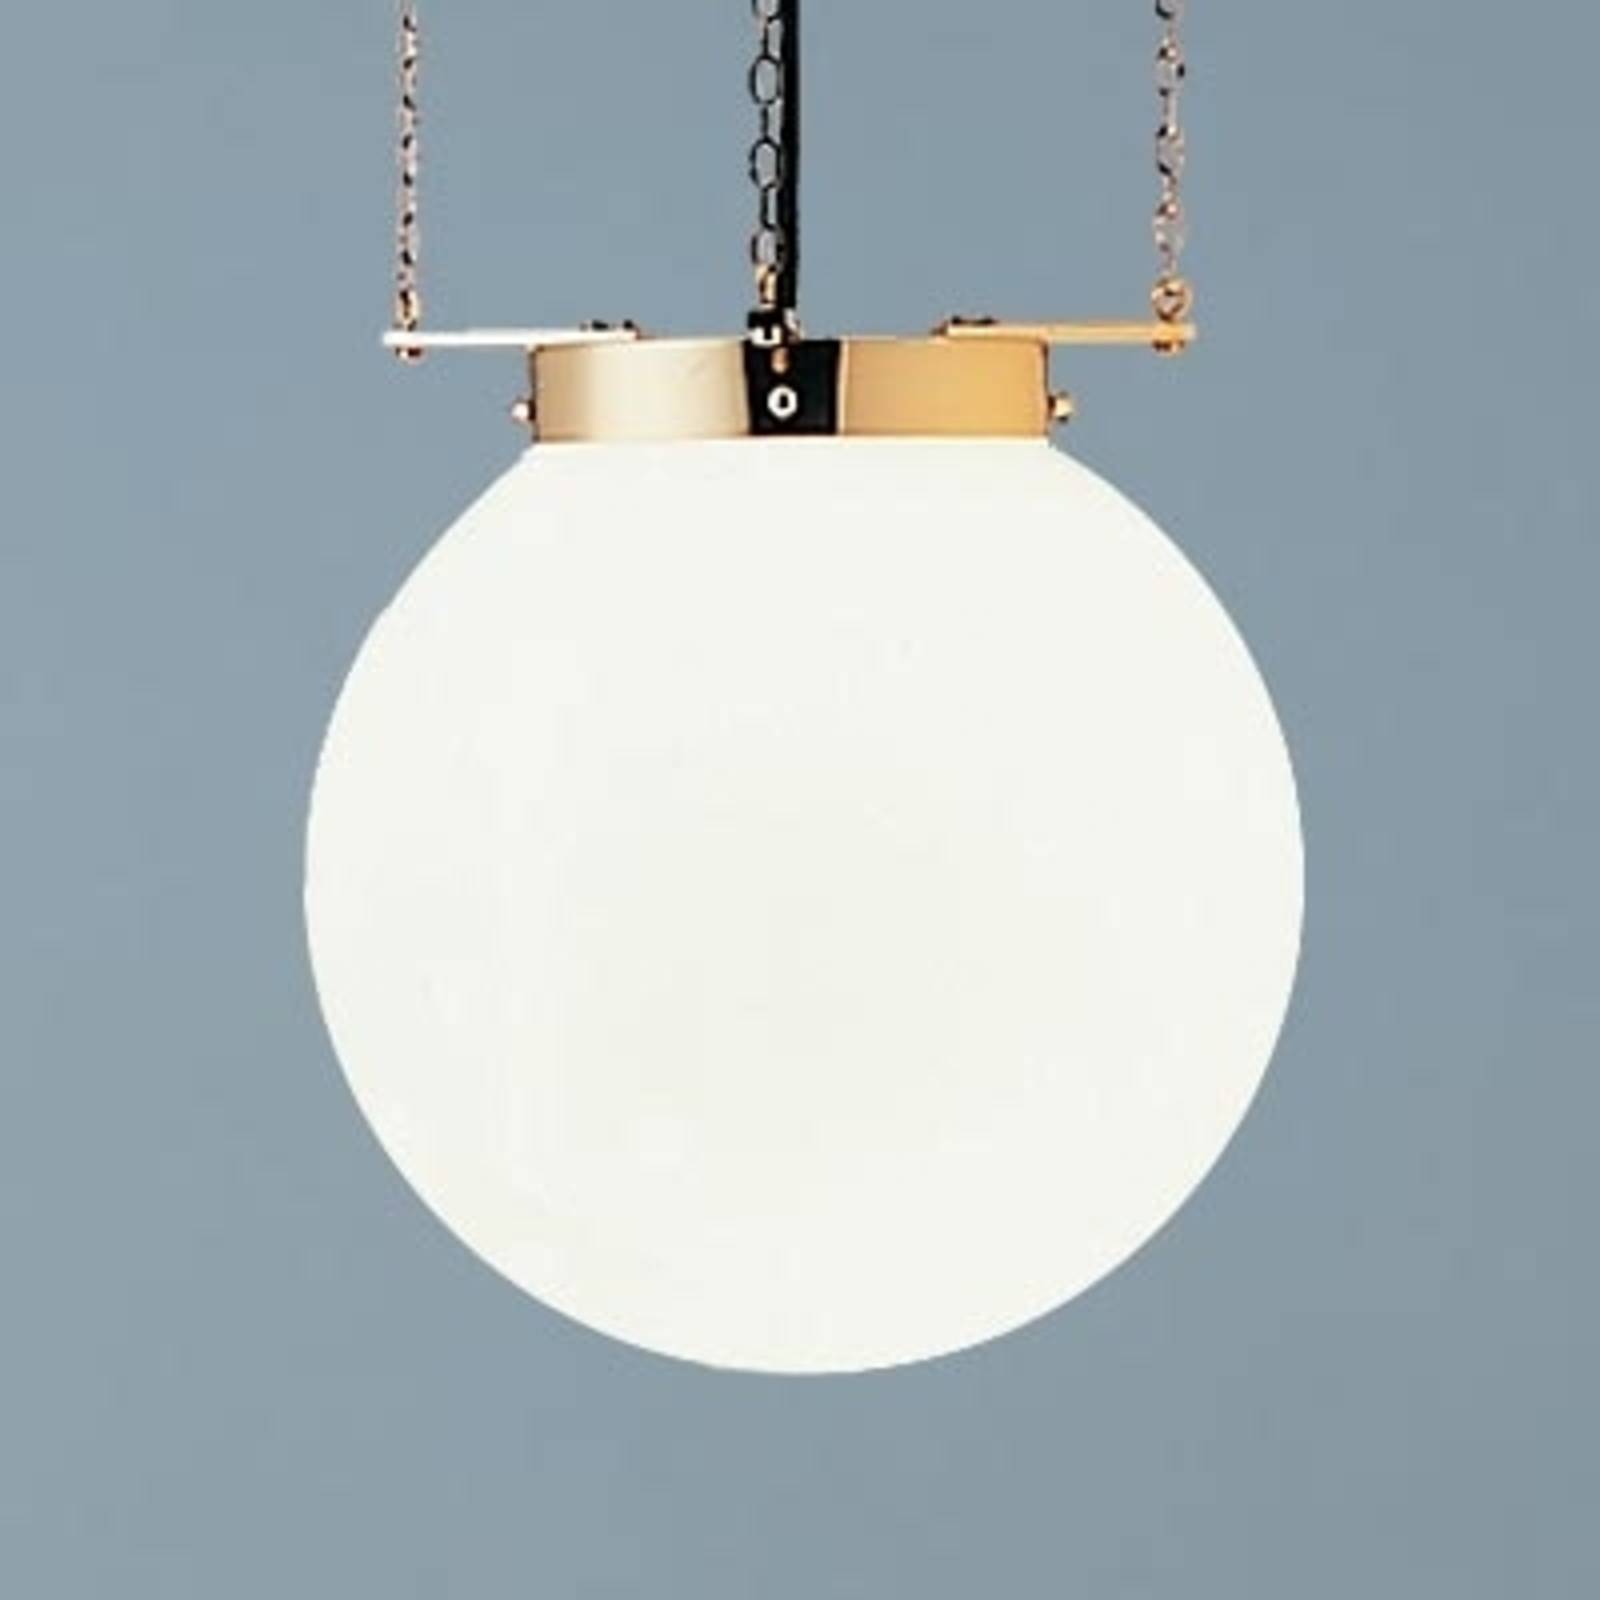 Hanglamp in Bauhaus-stijl, messing, 30 cm